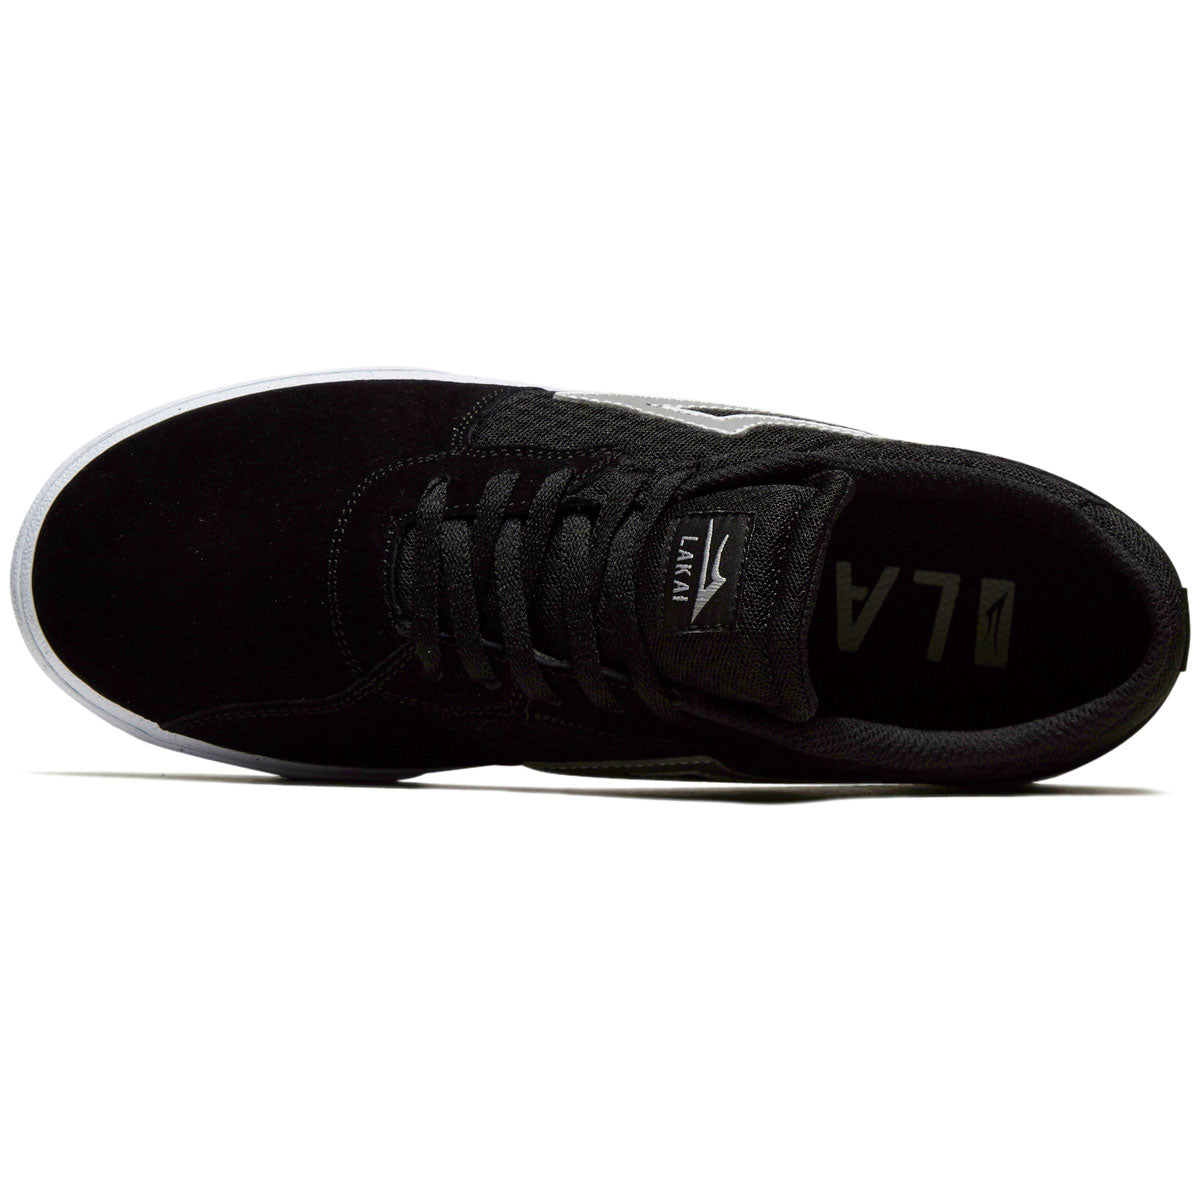 Lakai Cardiff Shoes - Black/White Suede image 3